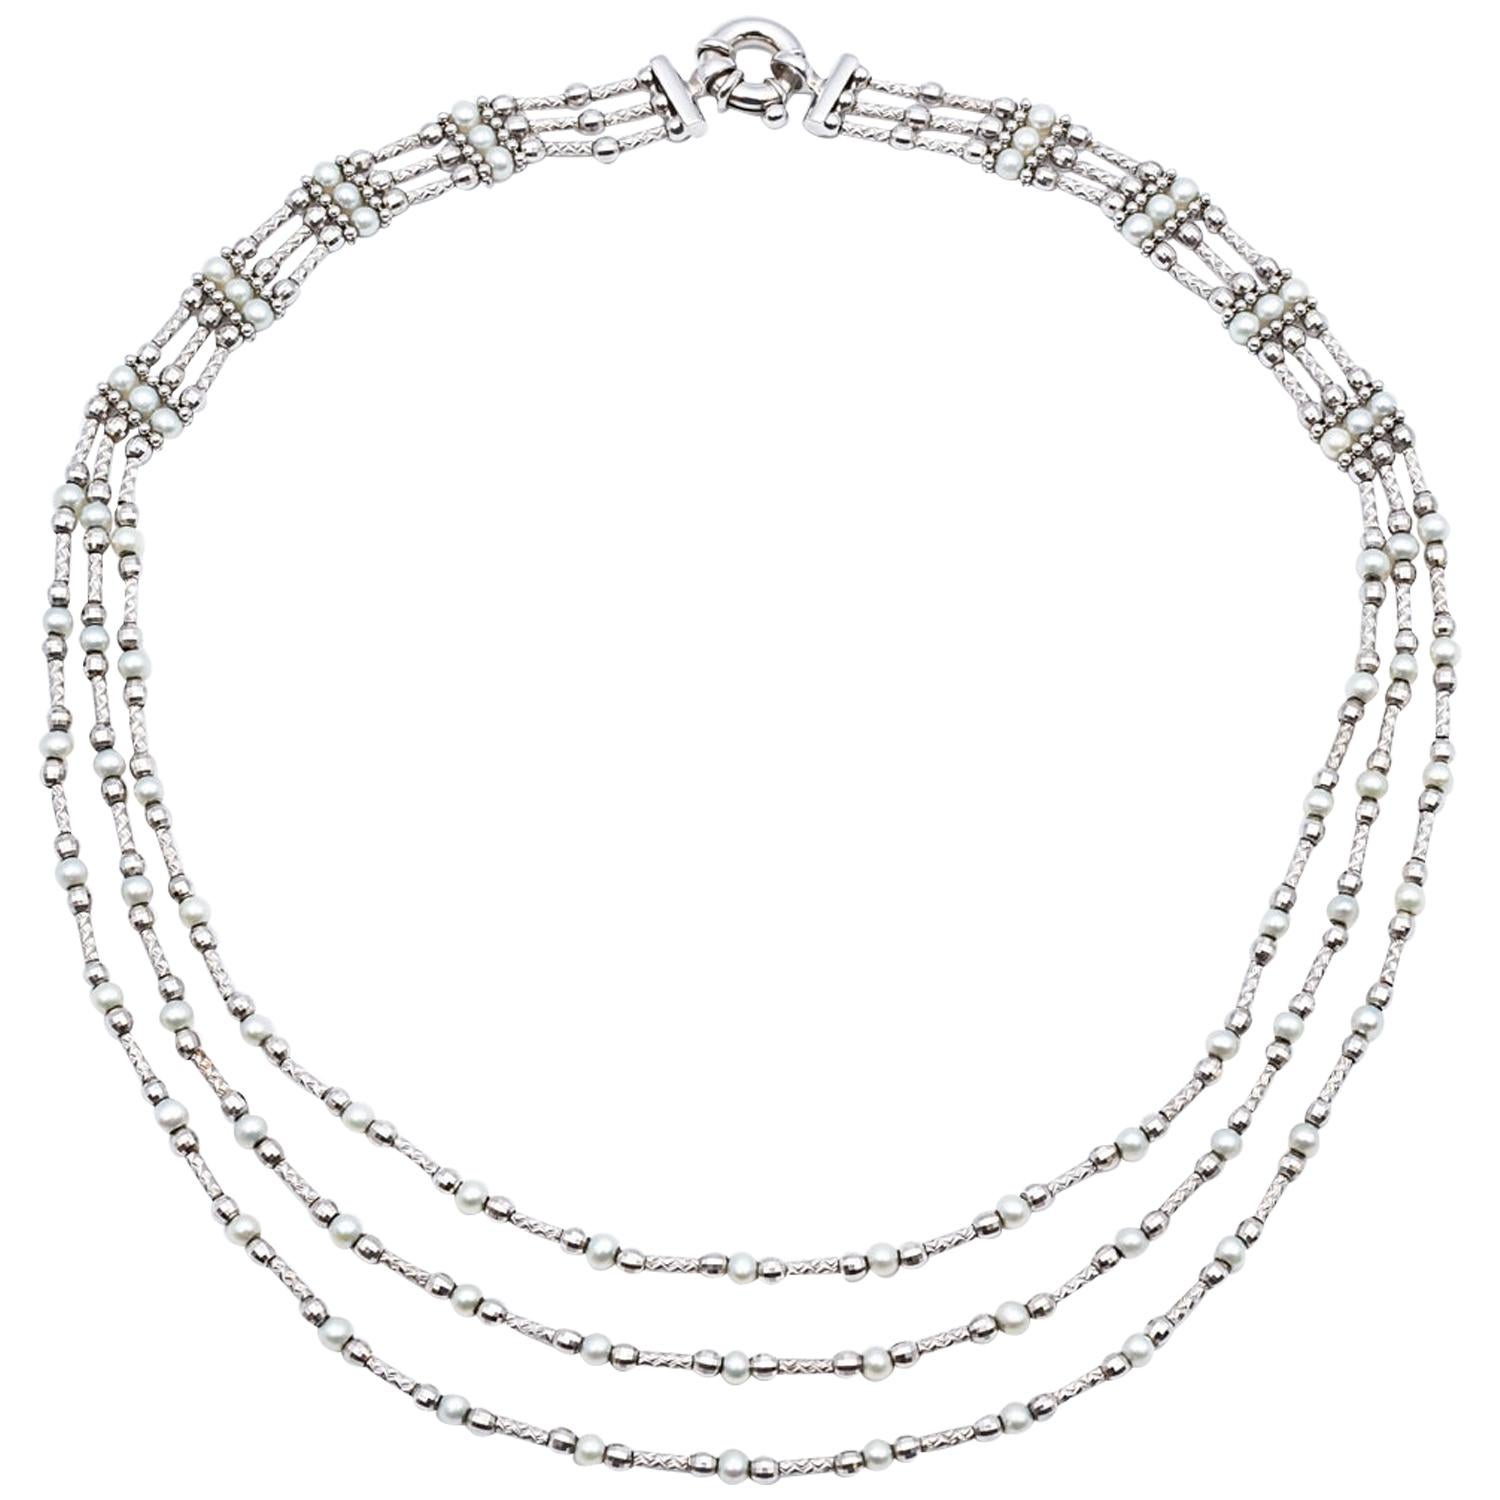 Flexible Halskette, 3 Reihen feine Perlen Weißgold 18 Karat